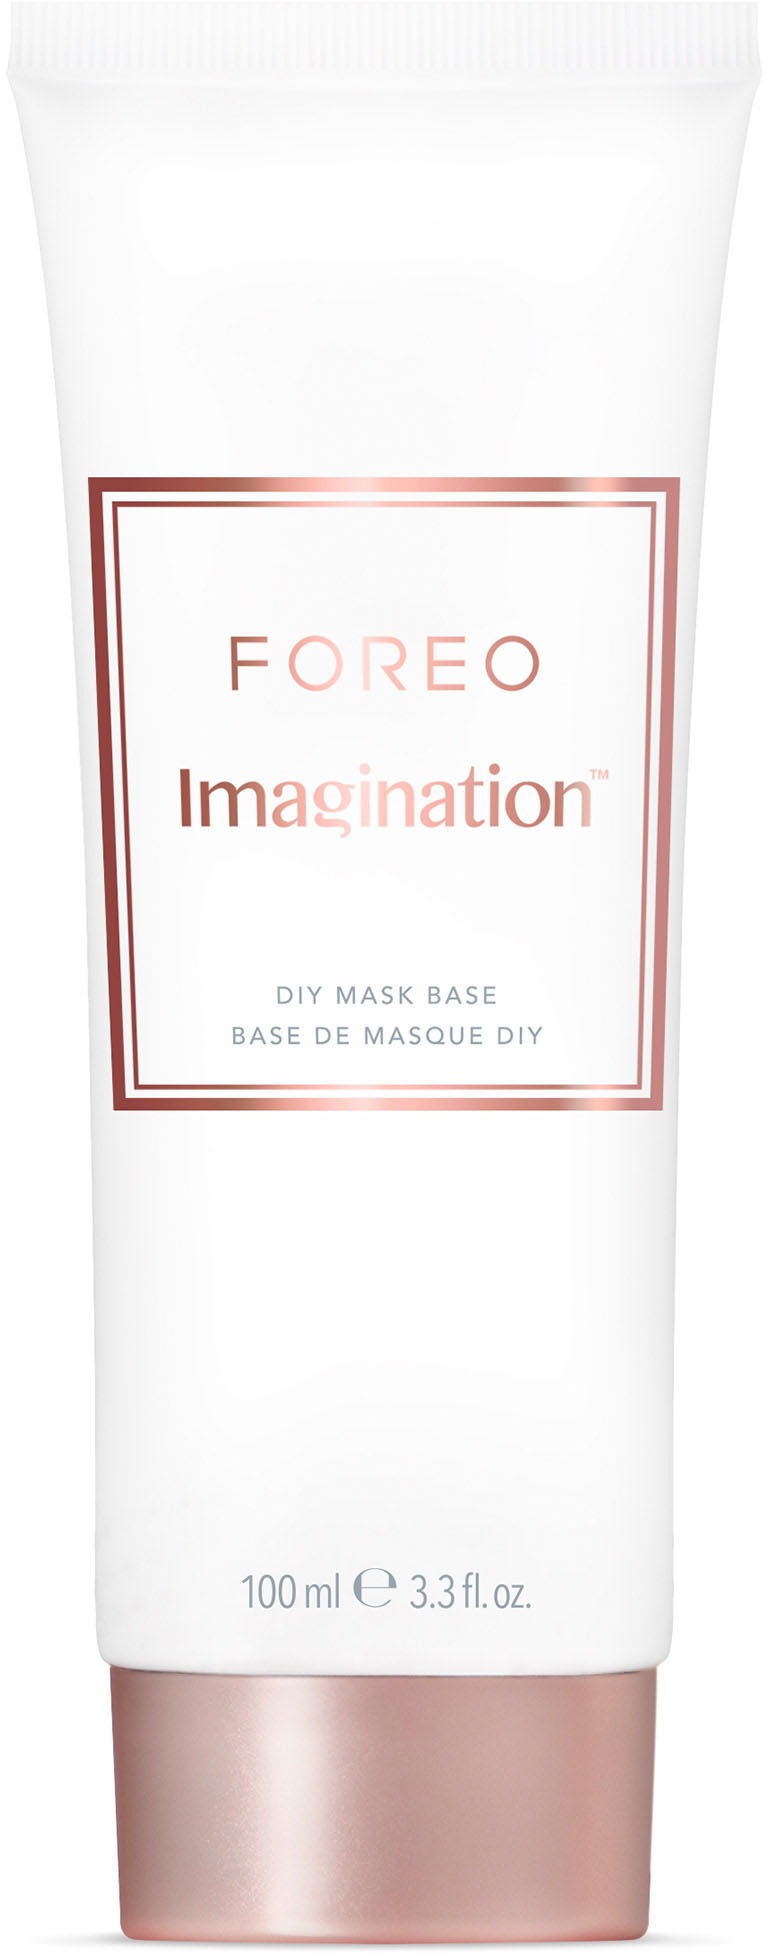 FOREO Gesichtsmaske »Imagination DIY Mask Base 100ml«